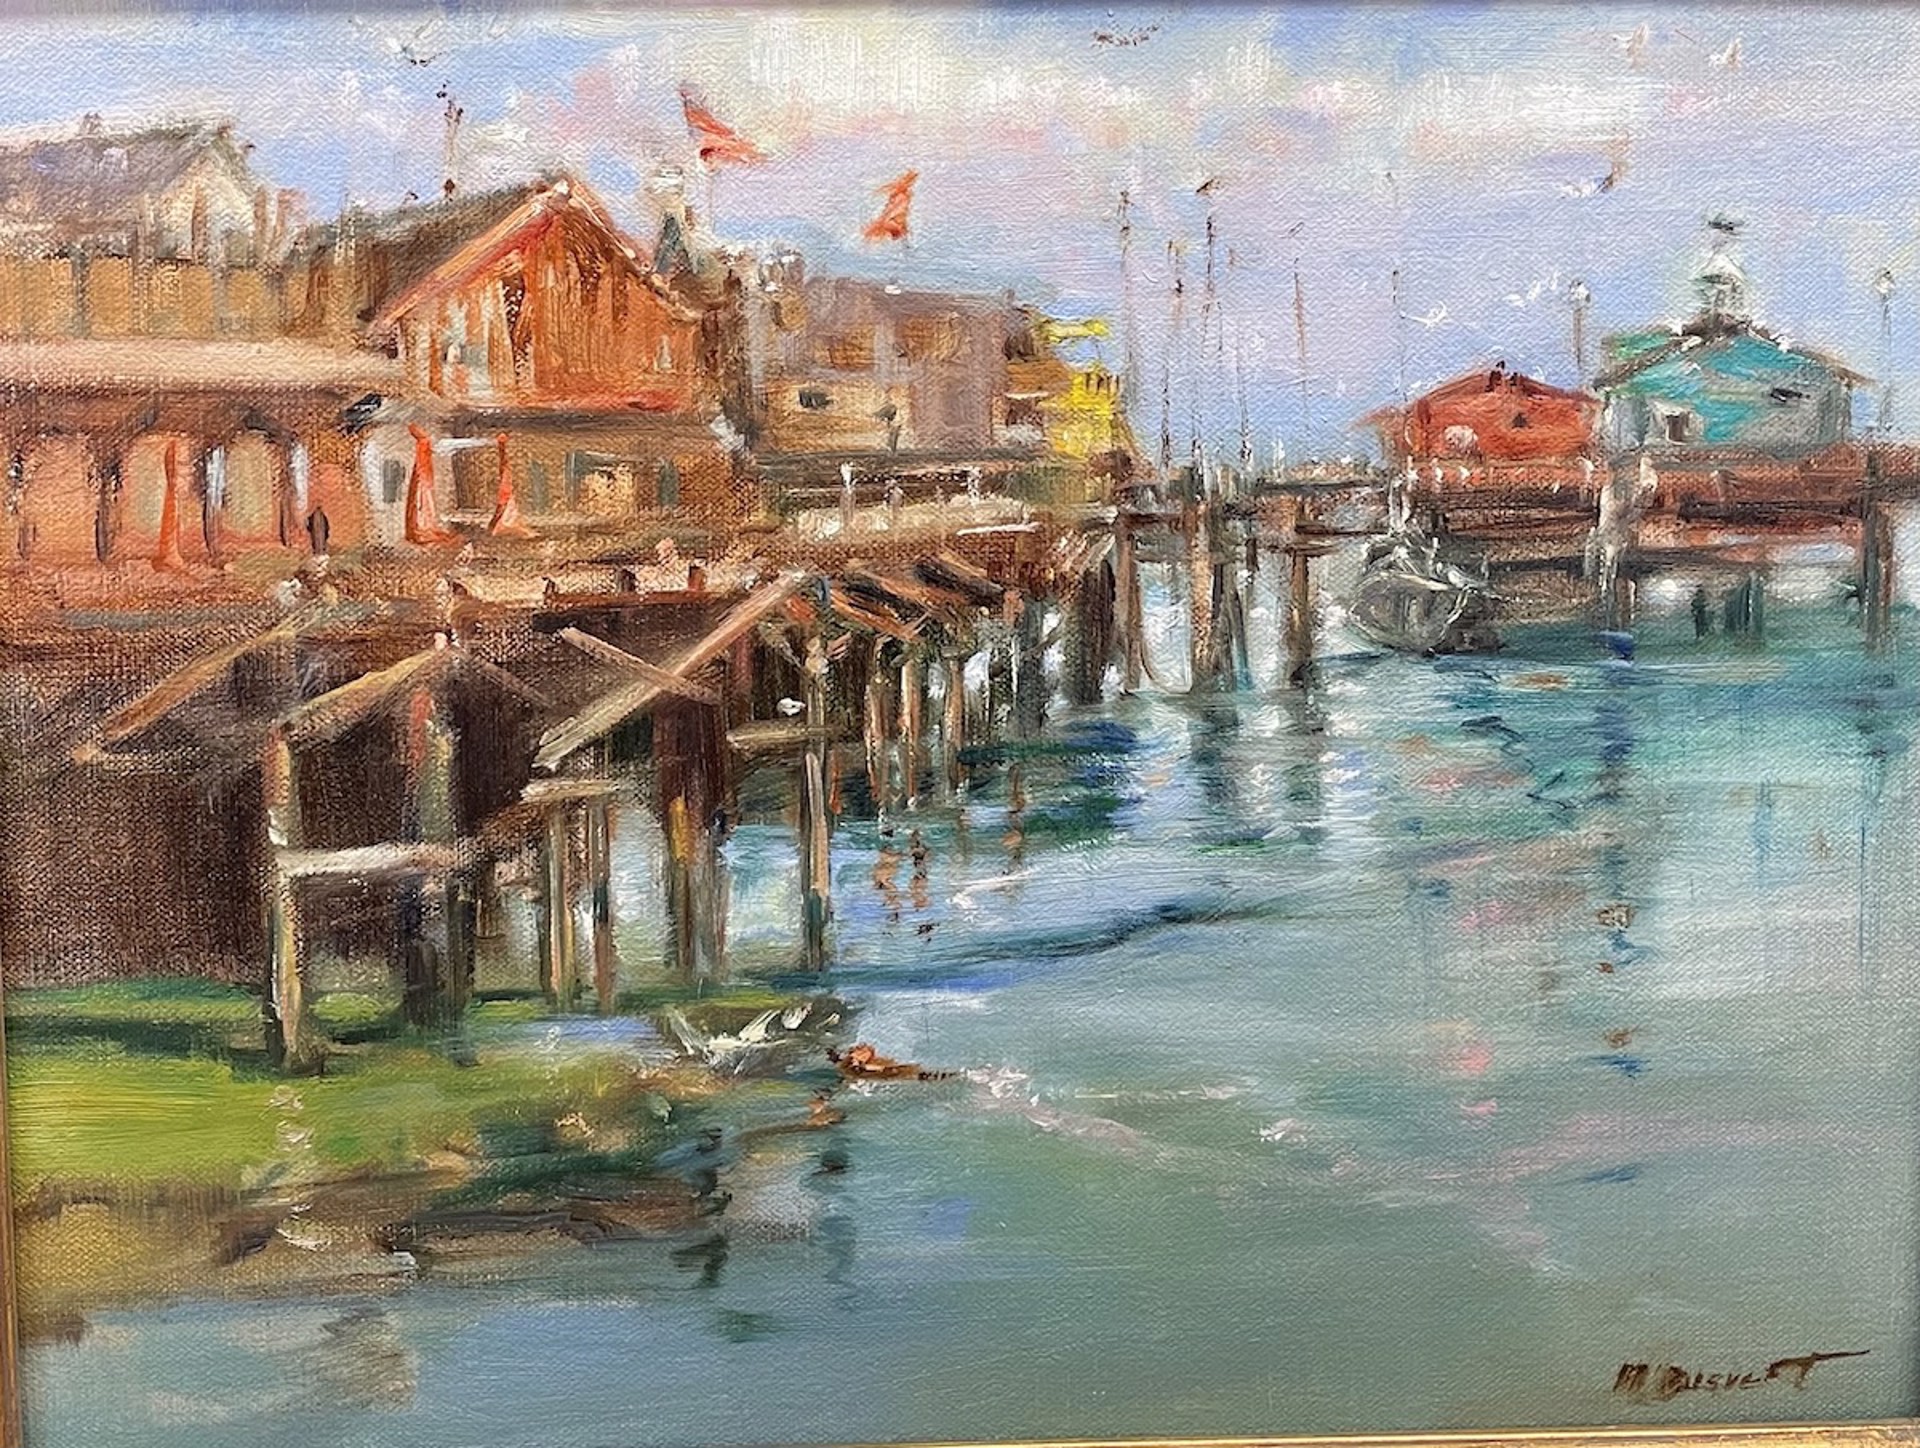 Monterey Fisherman's Wharf by Maria Boisvert